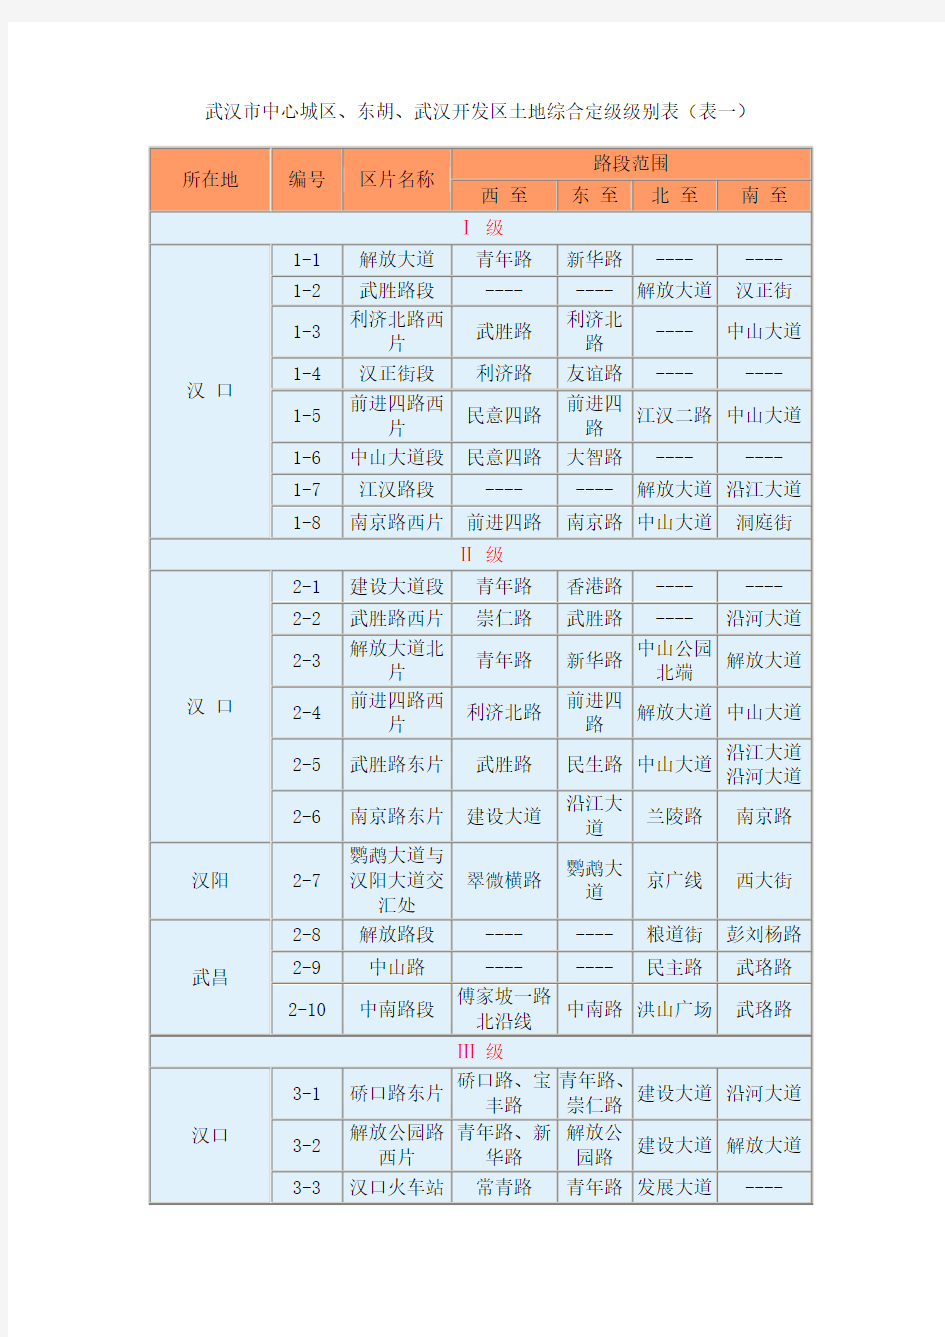 武汉市中心城区、东胡、武汉开发区土地综合定级级别表(表一)